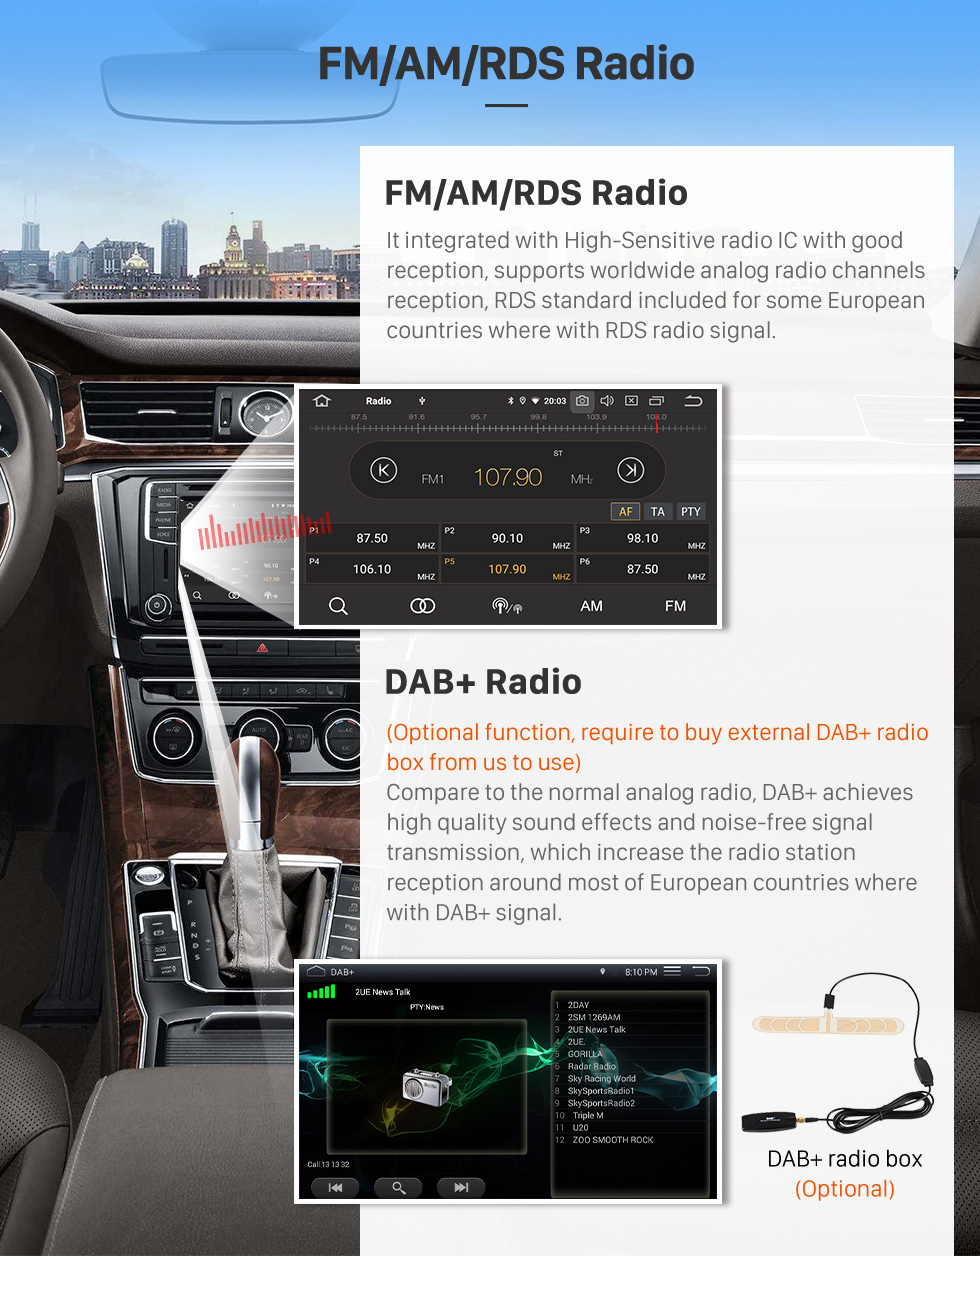 Seicane Écran tactile HD 7 pouces Android 12.0 Radio de navigation GPS pour Mercedes Benz CLASSE ML W164 ML350 ML430 ML450 ML500 2005-2012 avec prise en charge Carplay Bluetooth DAB+